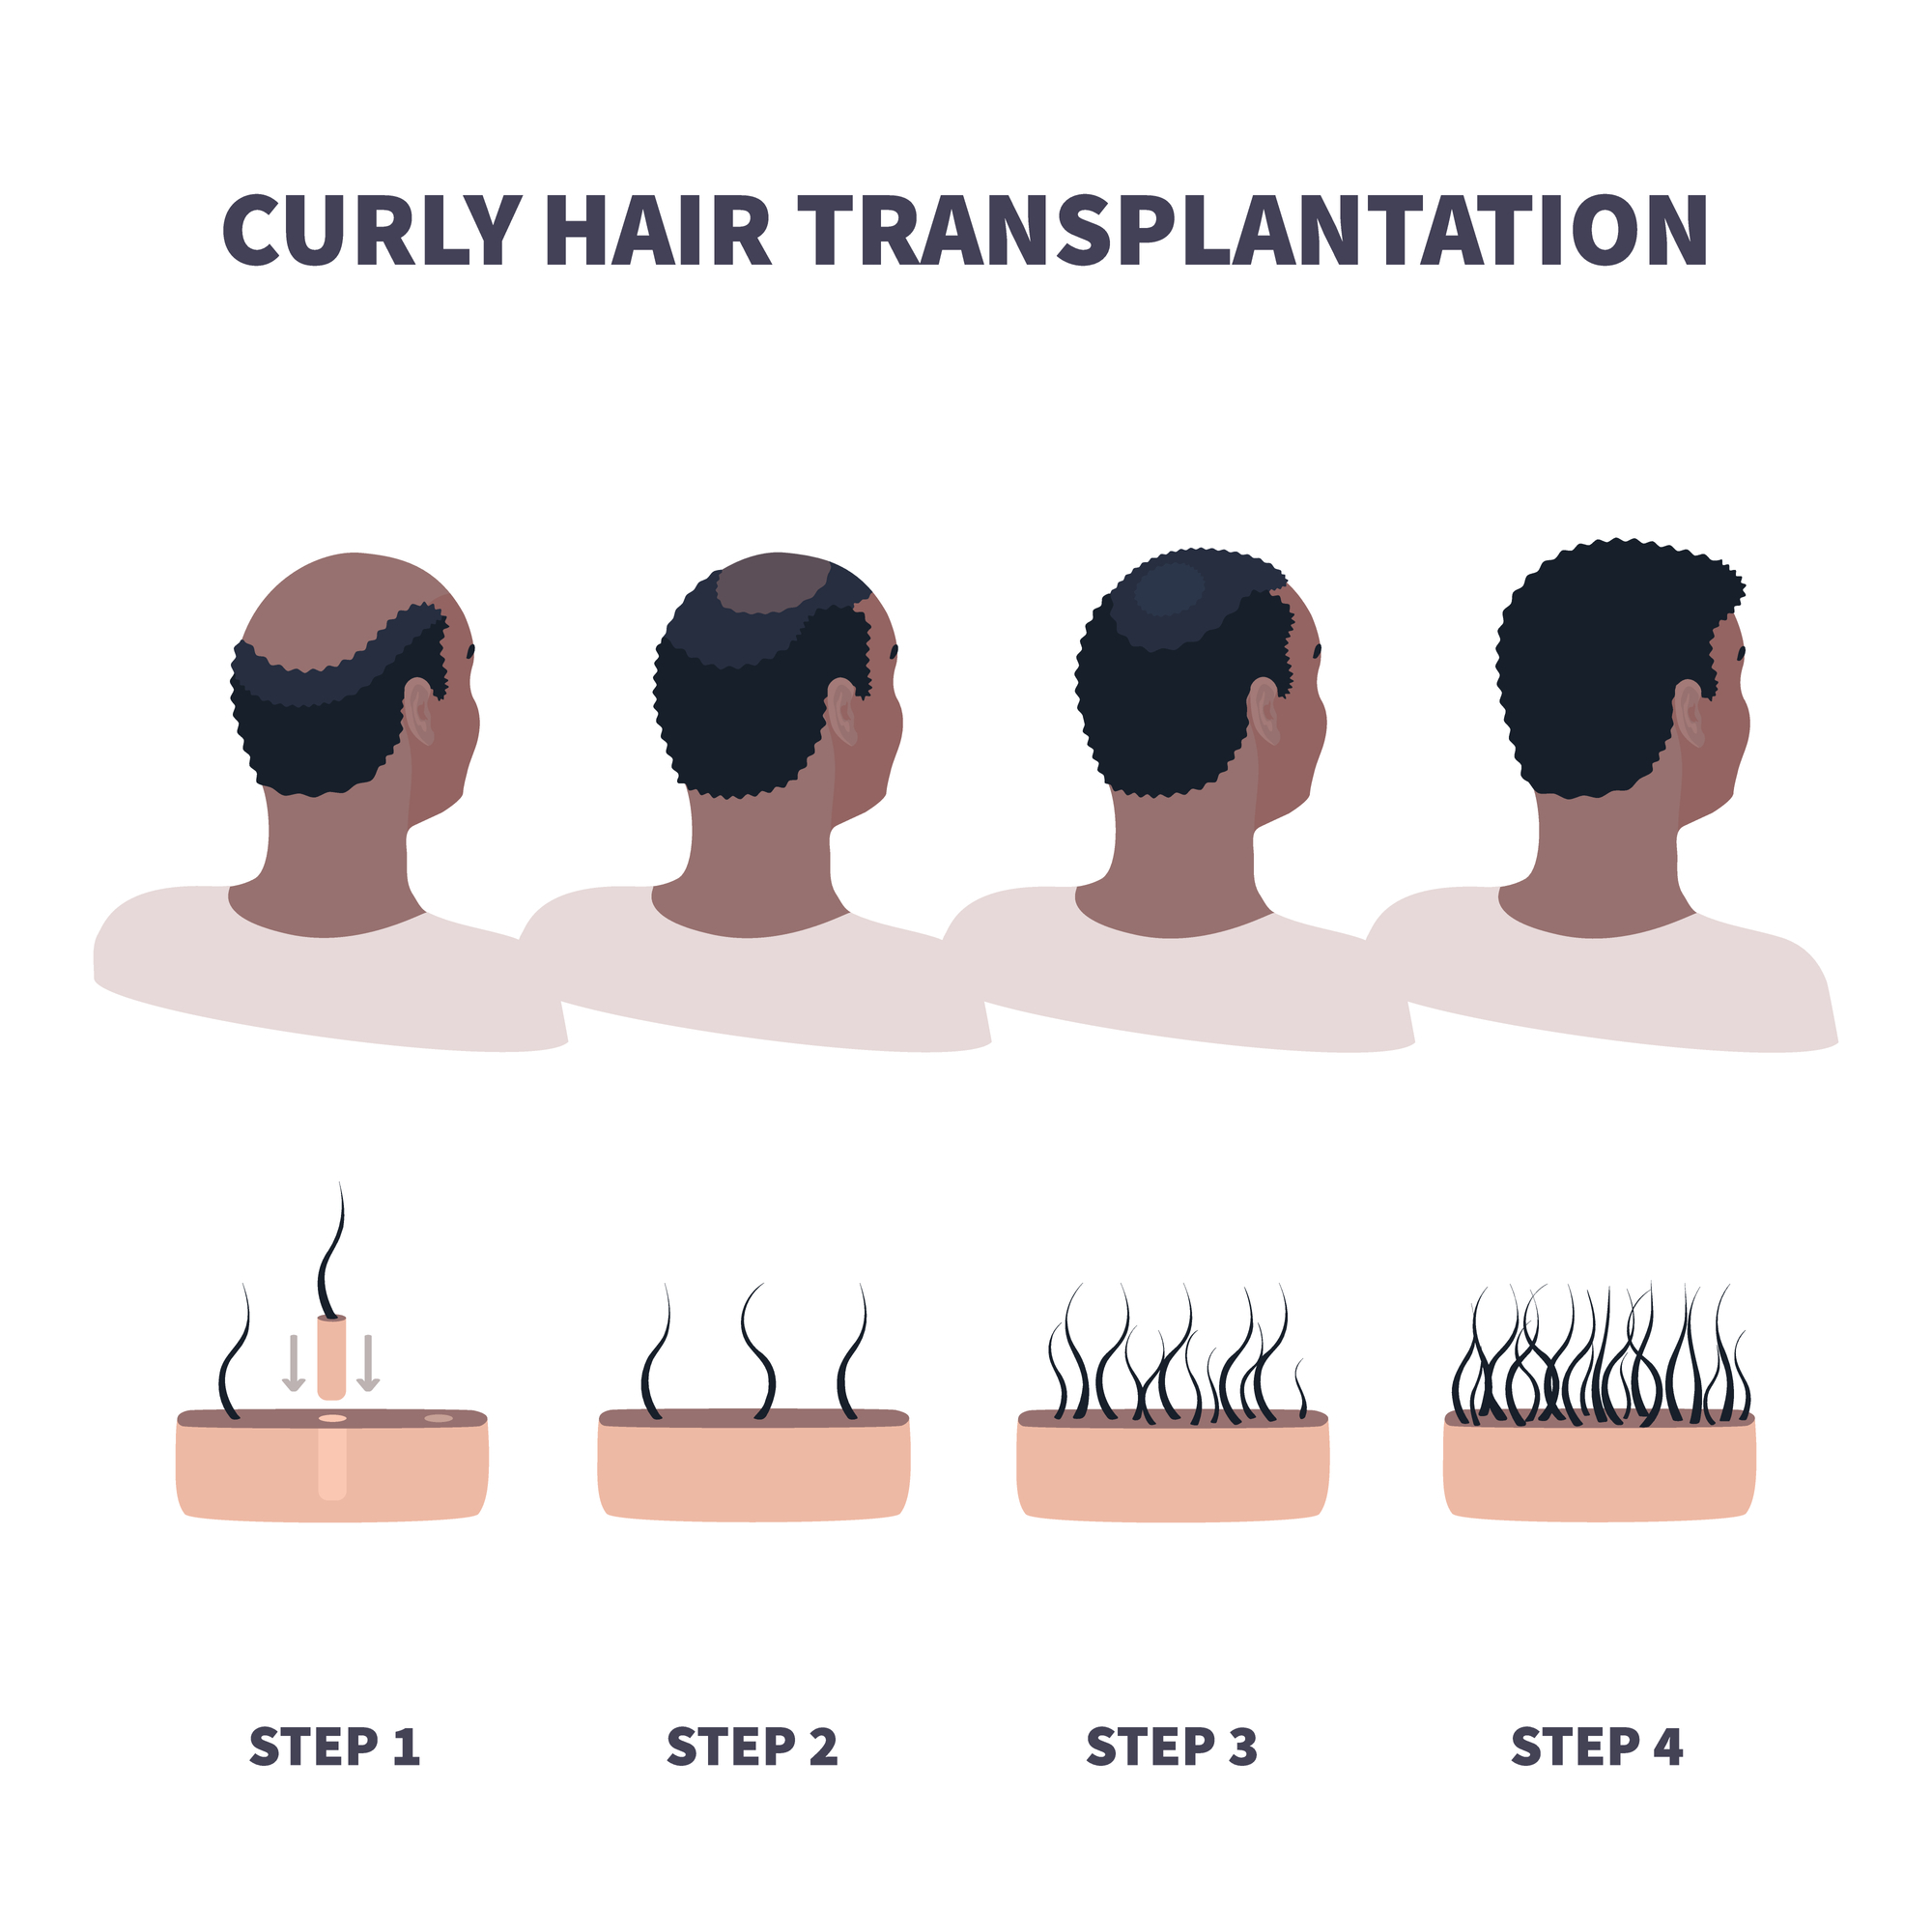 curly hair transplantation illustration